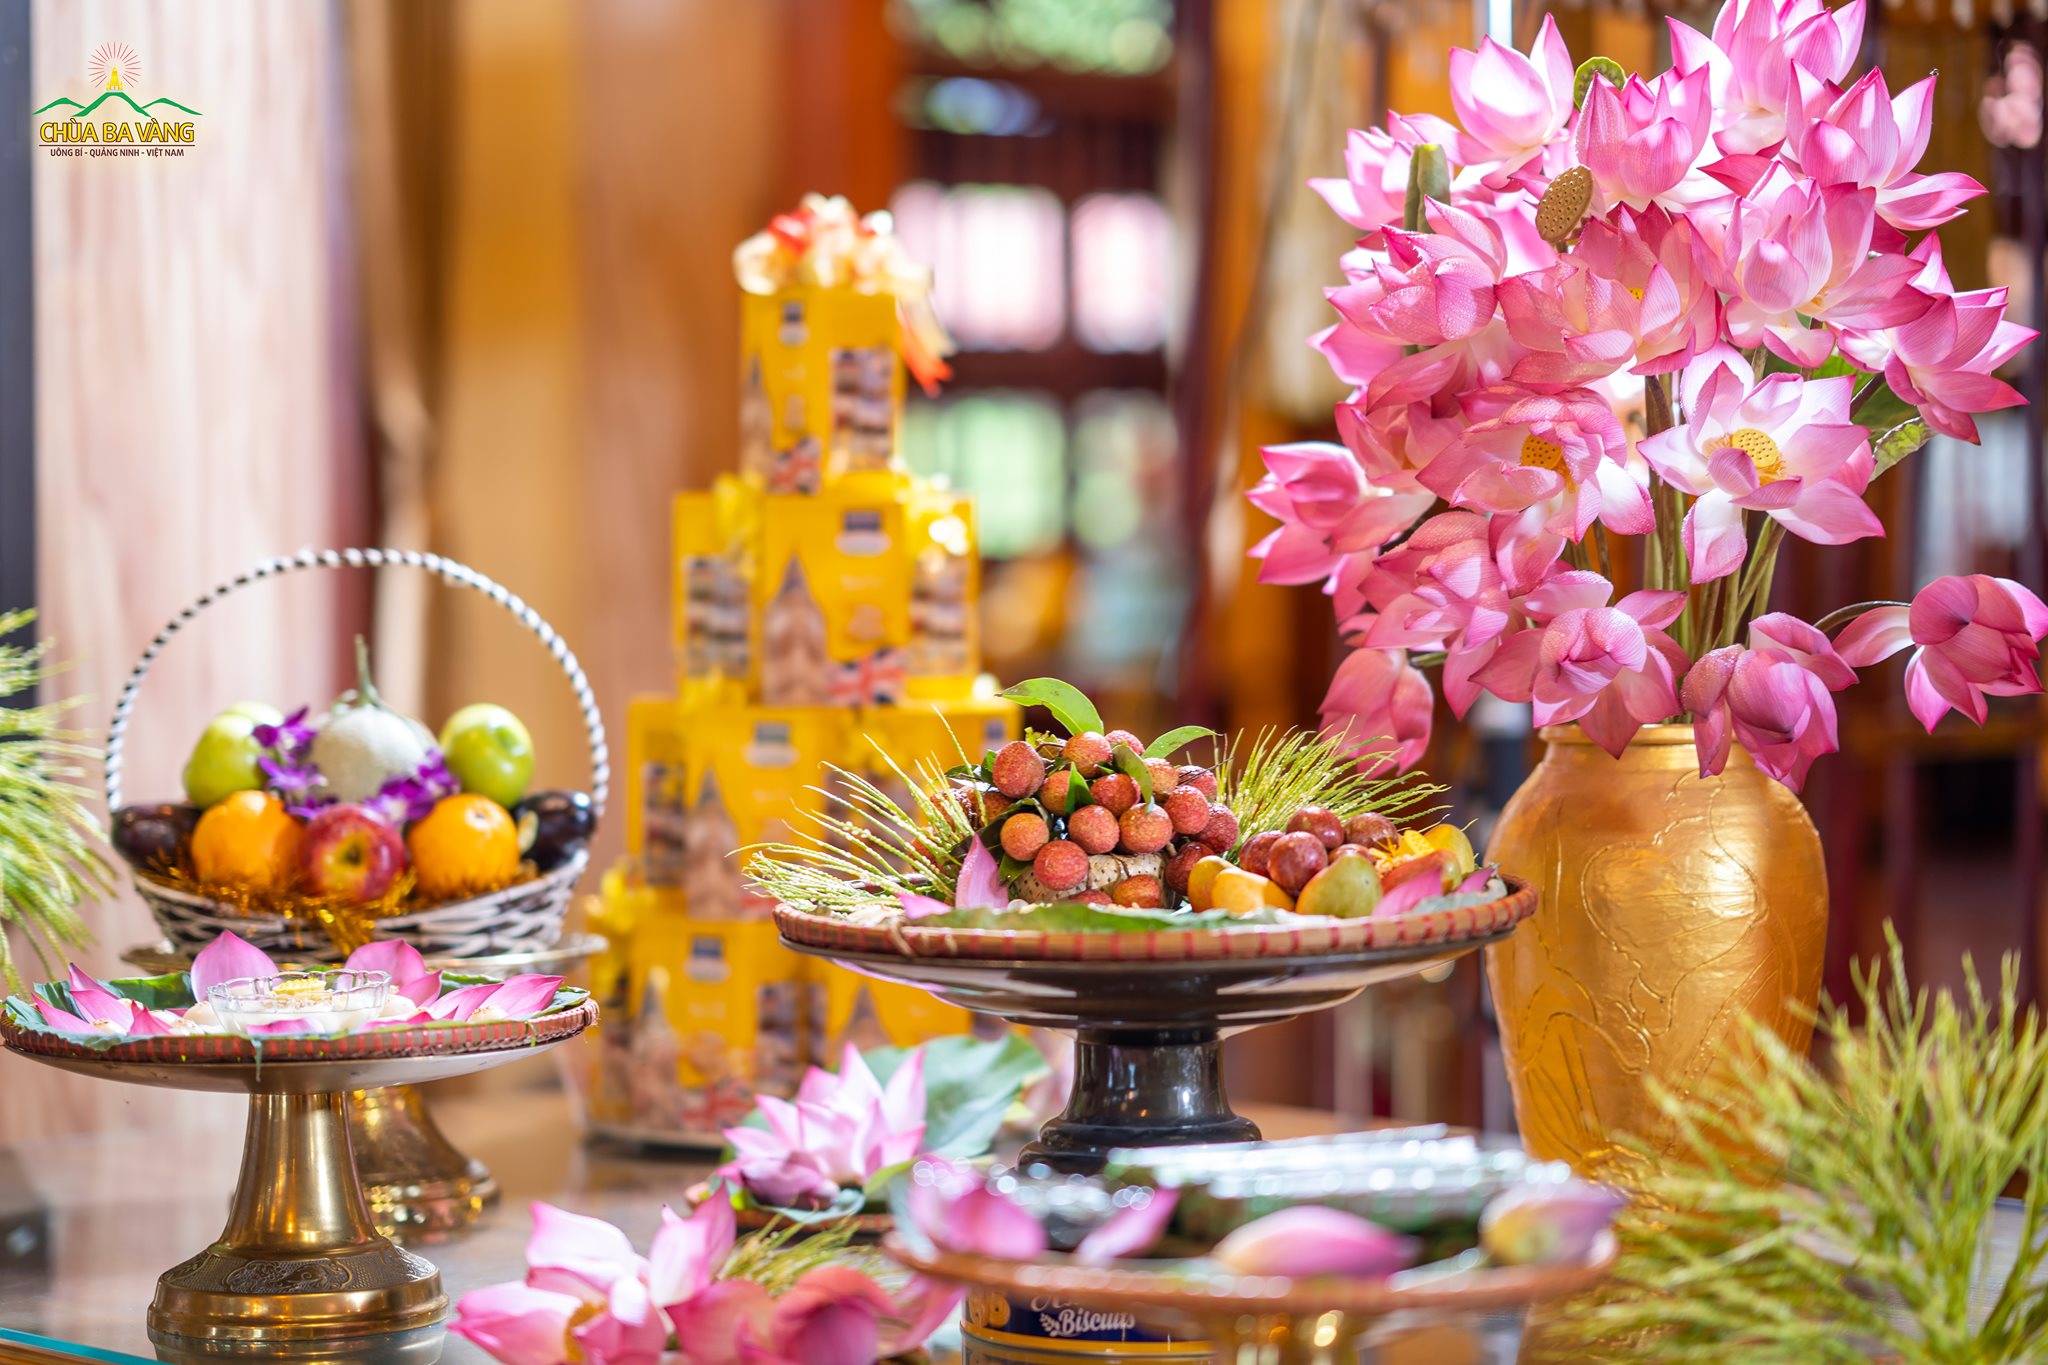 Hoa thơm trái ngọt đầu mùa được các Phật tử bày trí thật đẹp để dâng lên cúng dường Tam Bảo nhân dịp Tết Đoan Ngọ